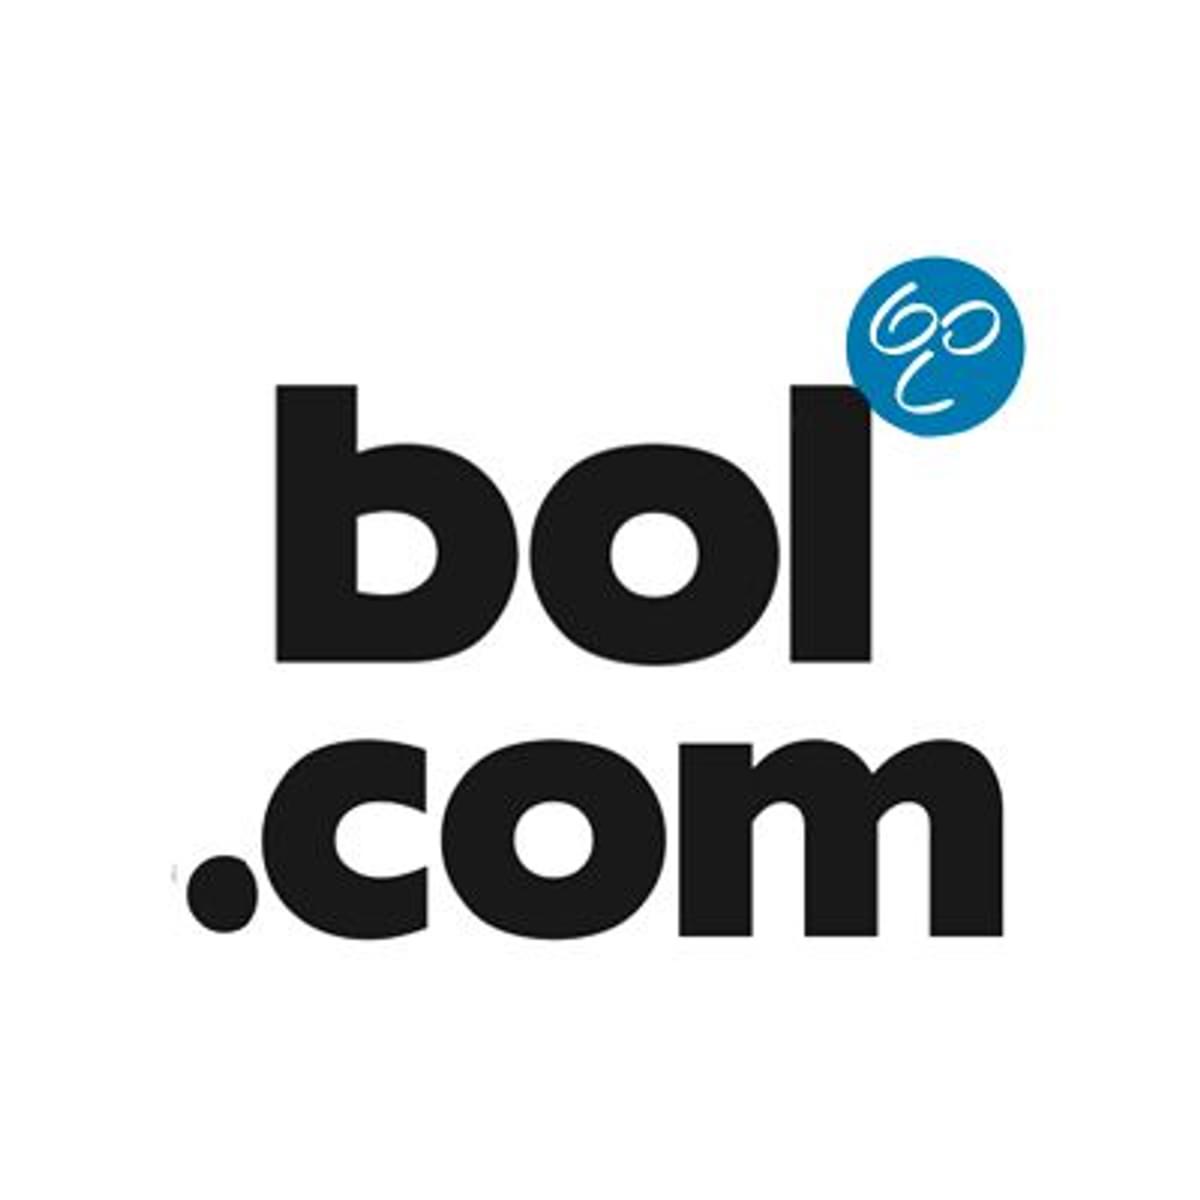 Bol.com opent partnerkantoor in Antwerpen image